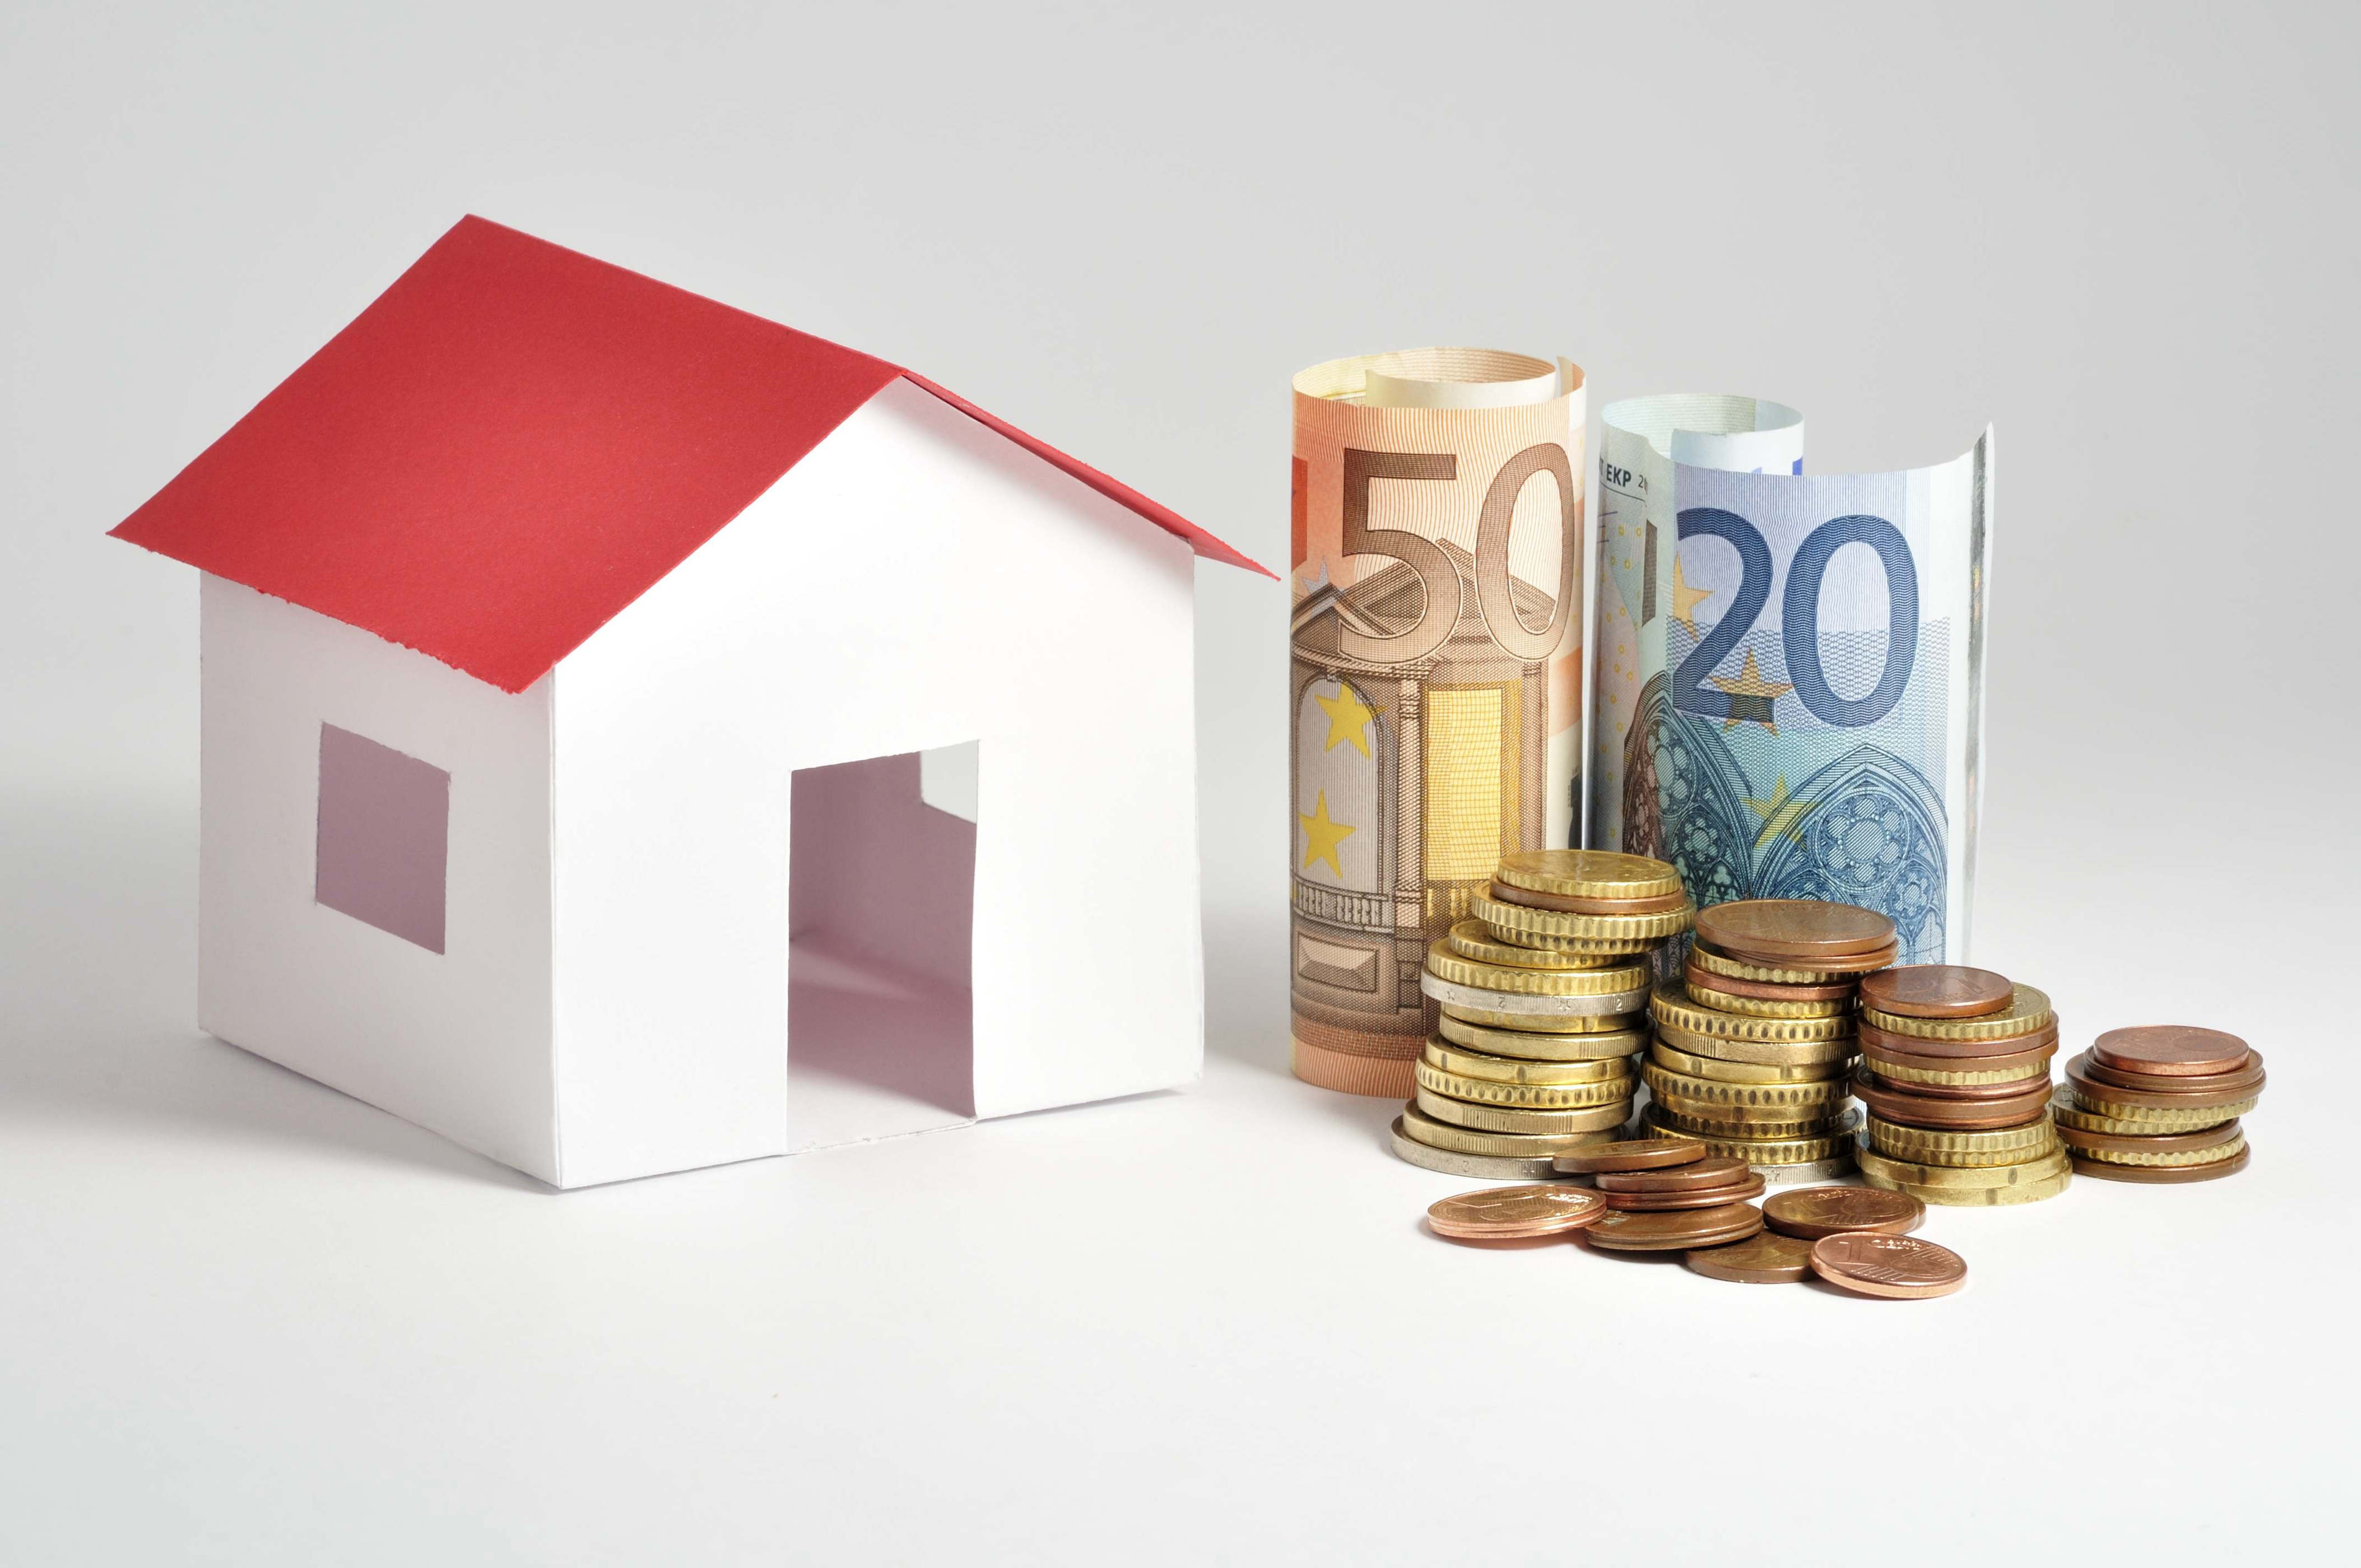 alerta en la vivienda: el precio subirá de forma desmedida en cinco años